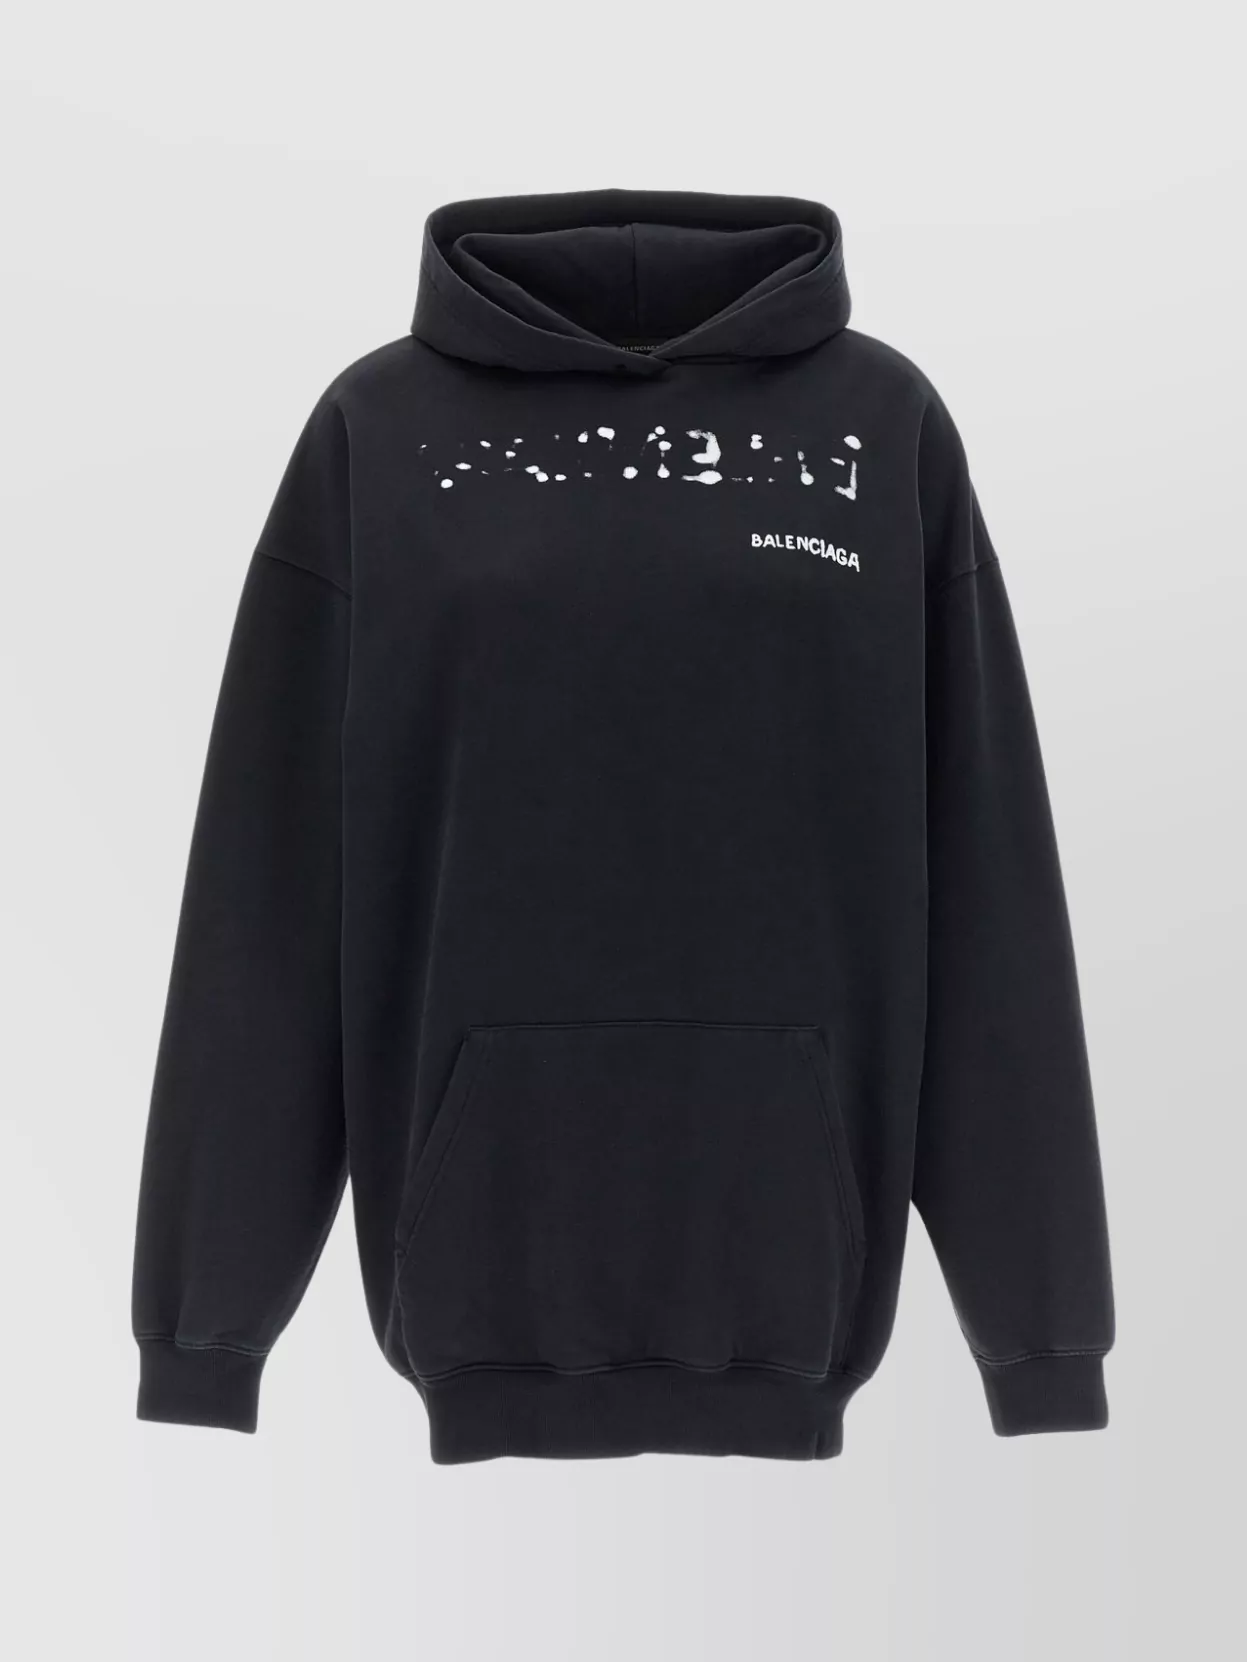 Balenciaga Logo Print Hooded Sweatshirt In Black